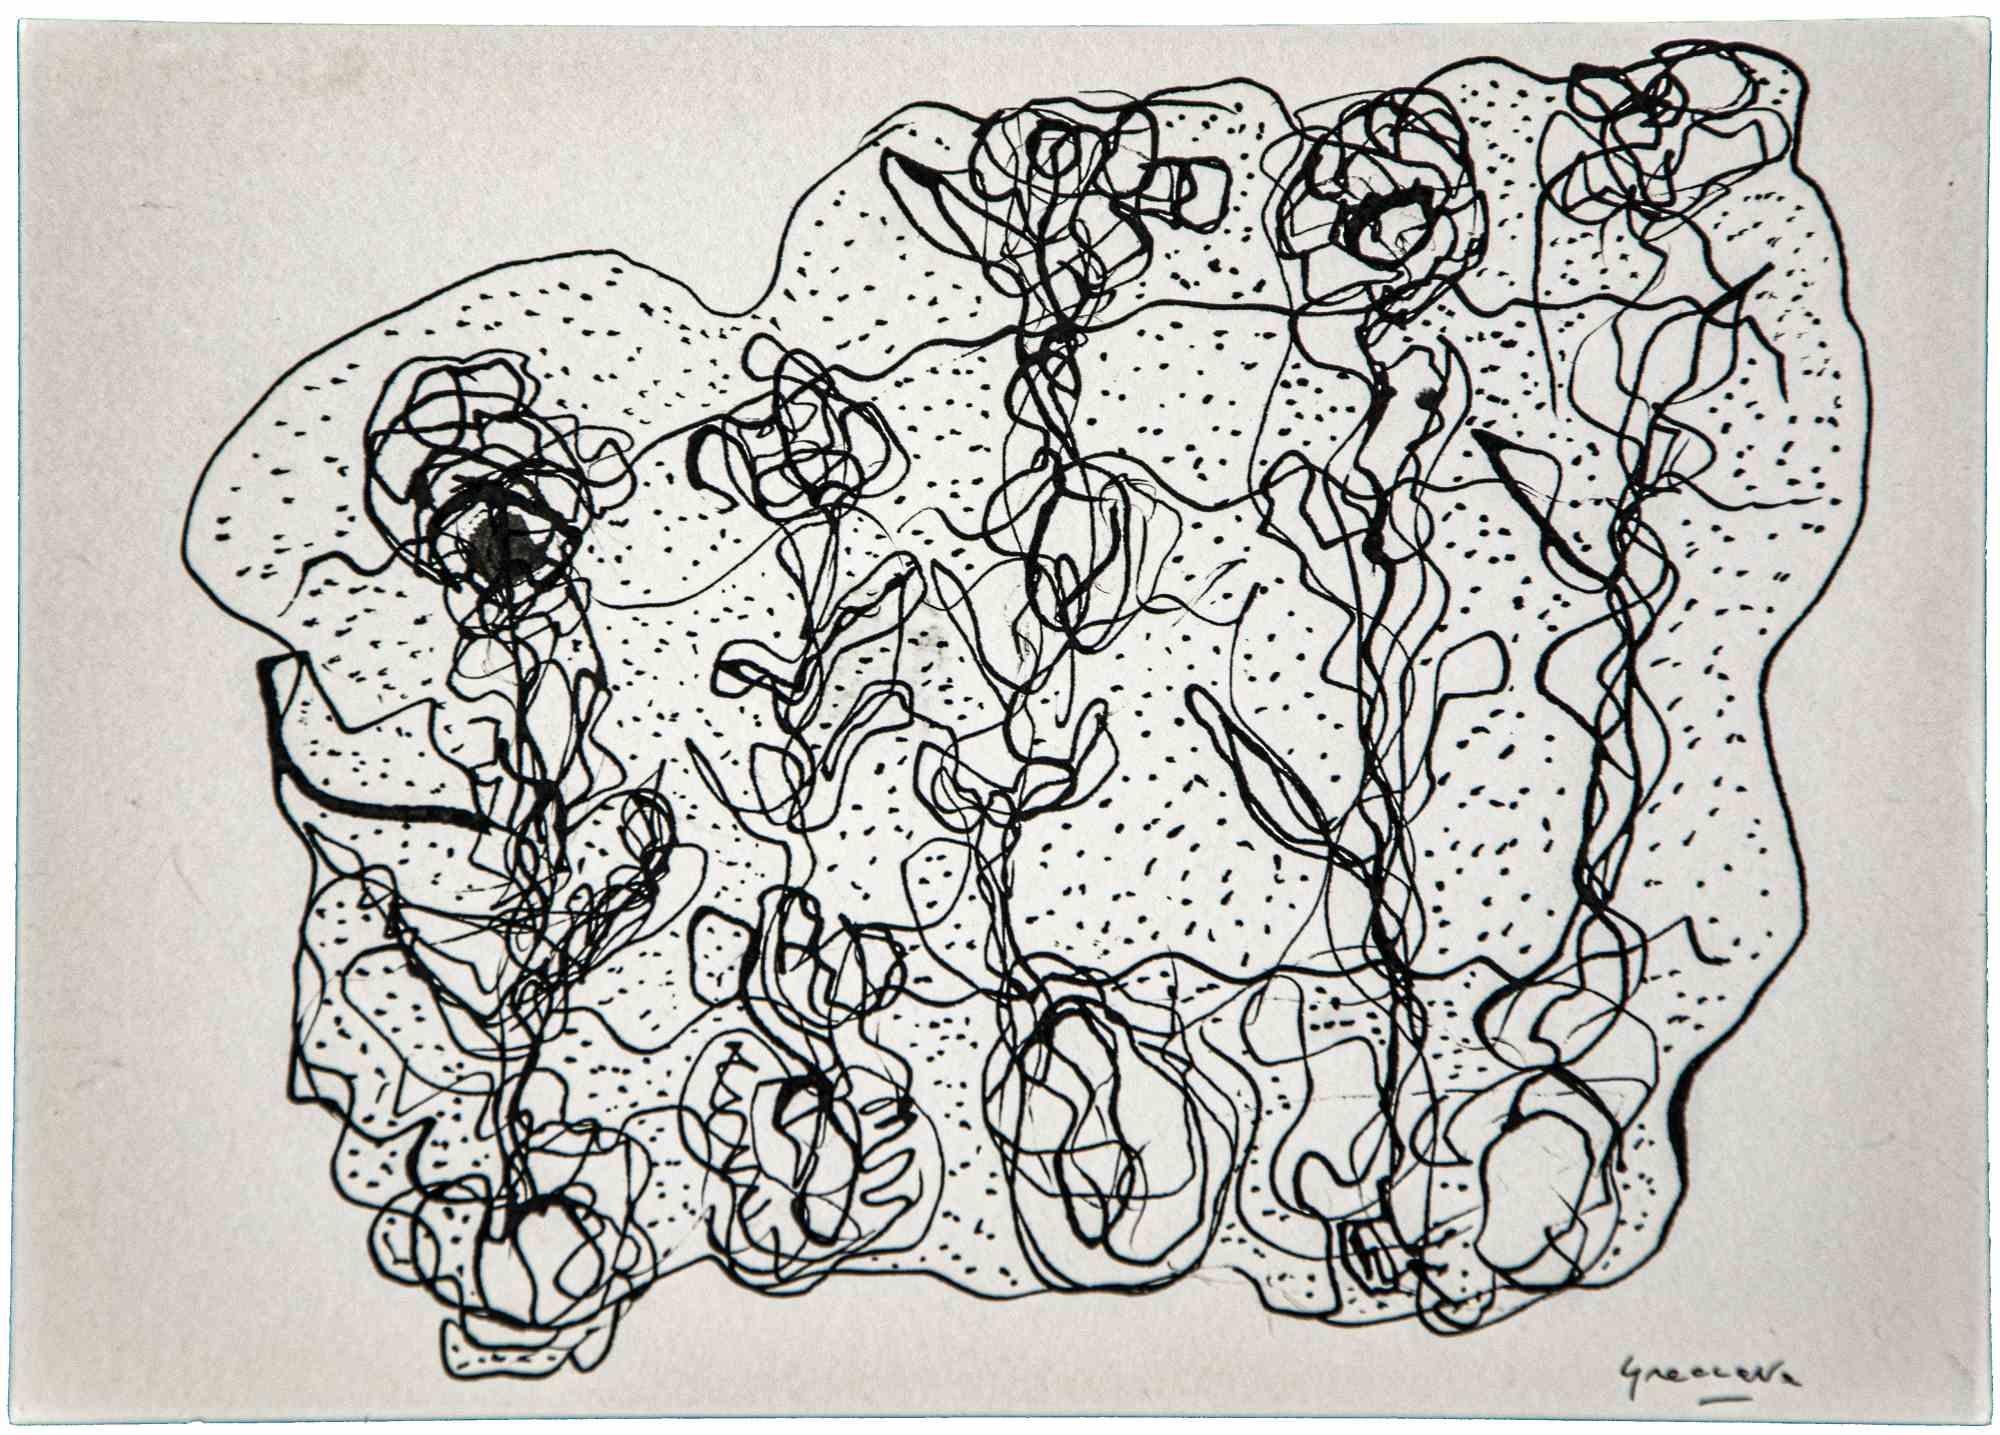 Die Komposition ist eine Original-Porzellan-Tuschezeichnung von Maurizio Gracceva (Roma, 1955) aus dem Jahr 2010.

Guter Zustand.

Handsigniert.

Autor zahlreicher philosophischer und literarischer Essays, seit seiner Jugend  Maurizio Gracceva hat